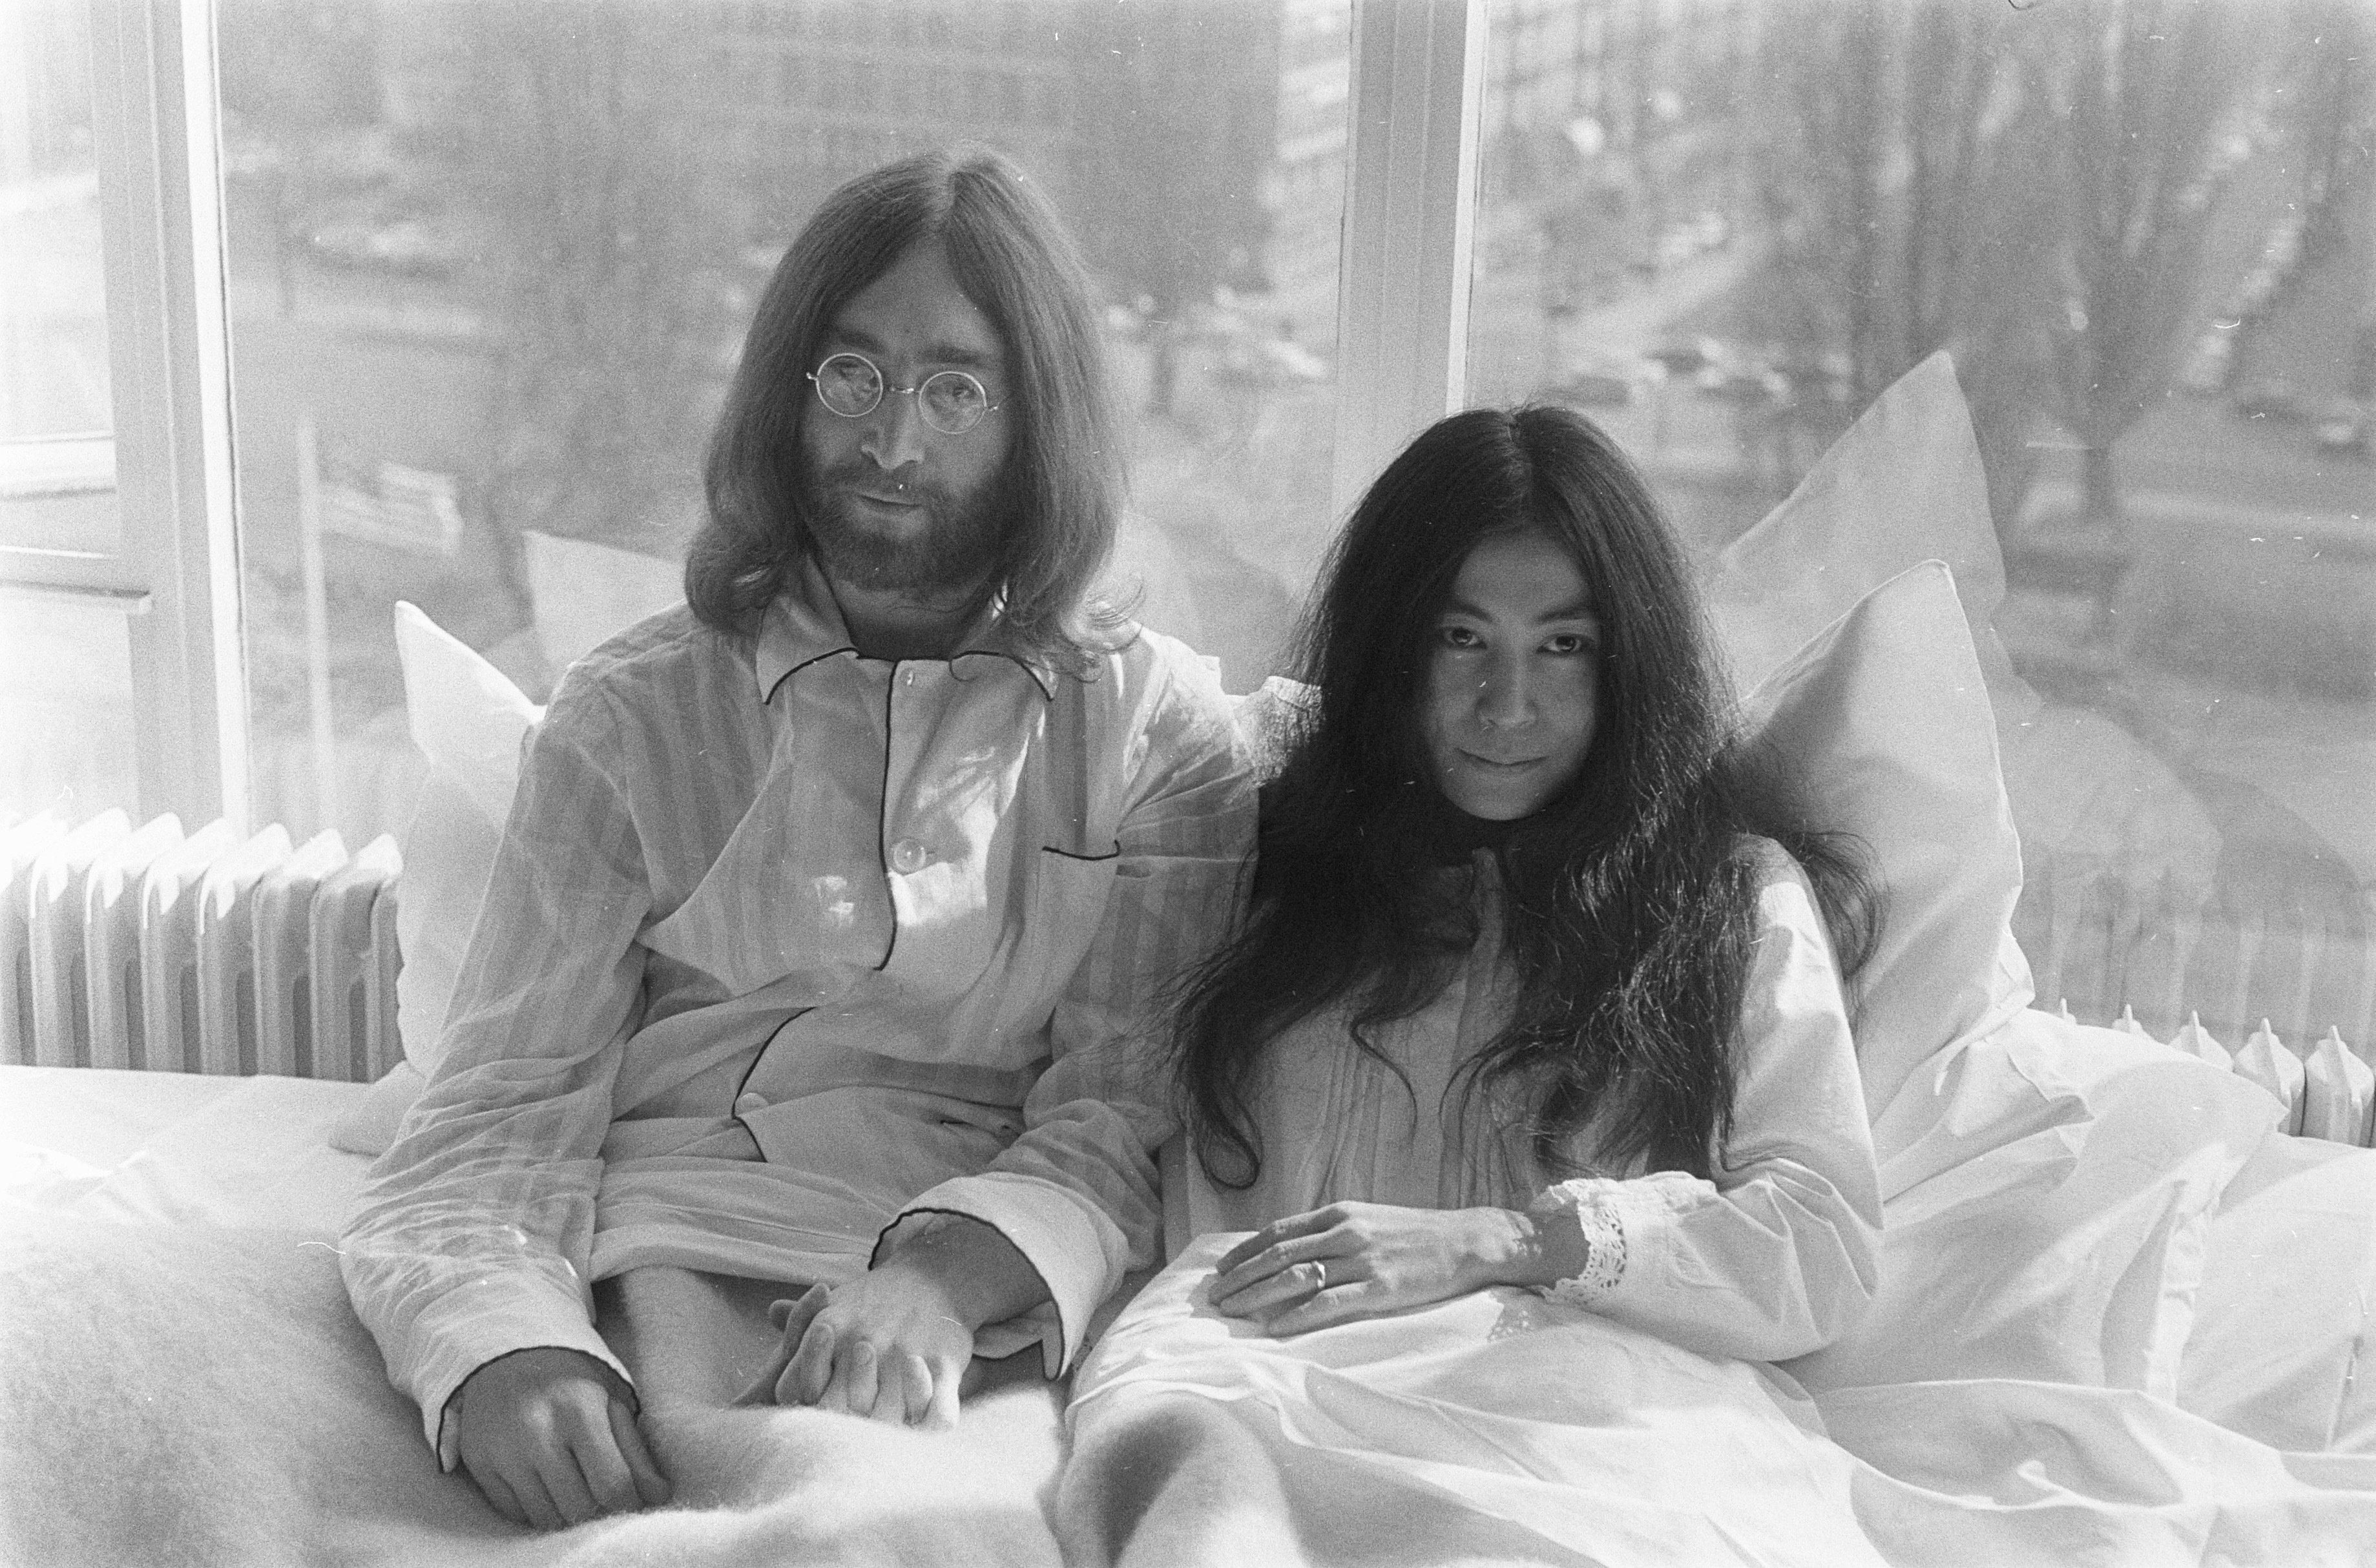 Я был самовлюбленным: убийца Джона Леннона извинился перед его вдовой Йоко Оно